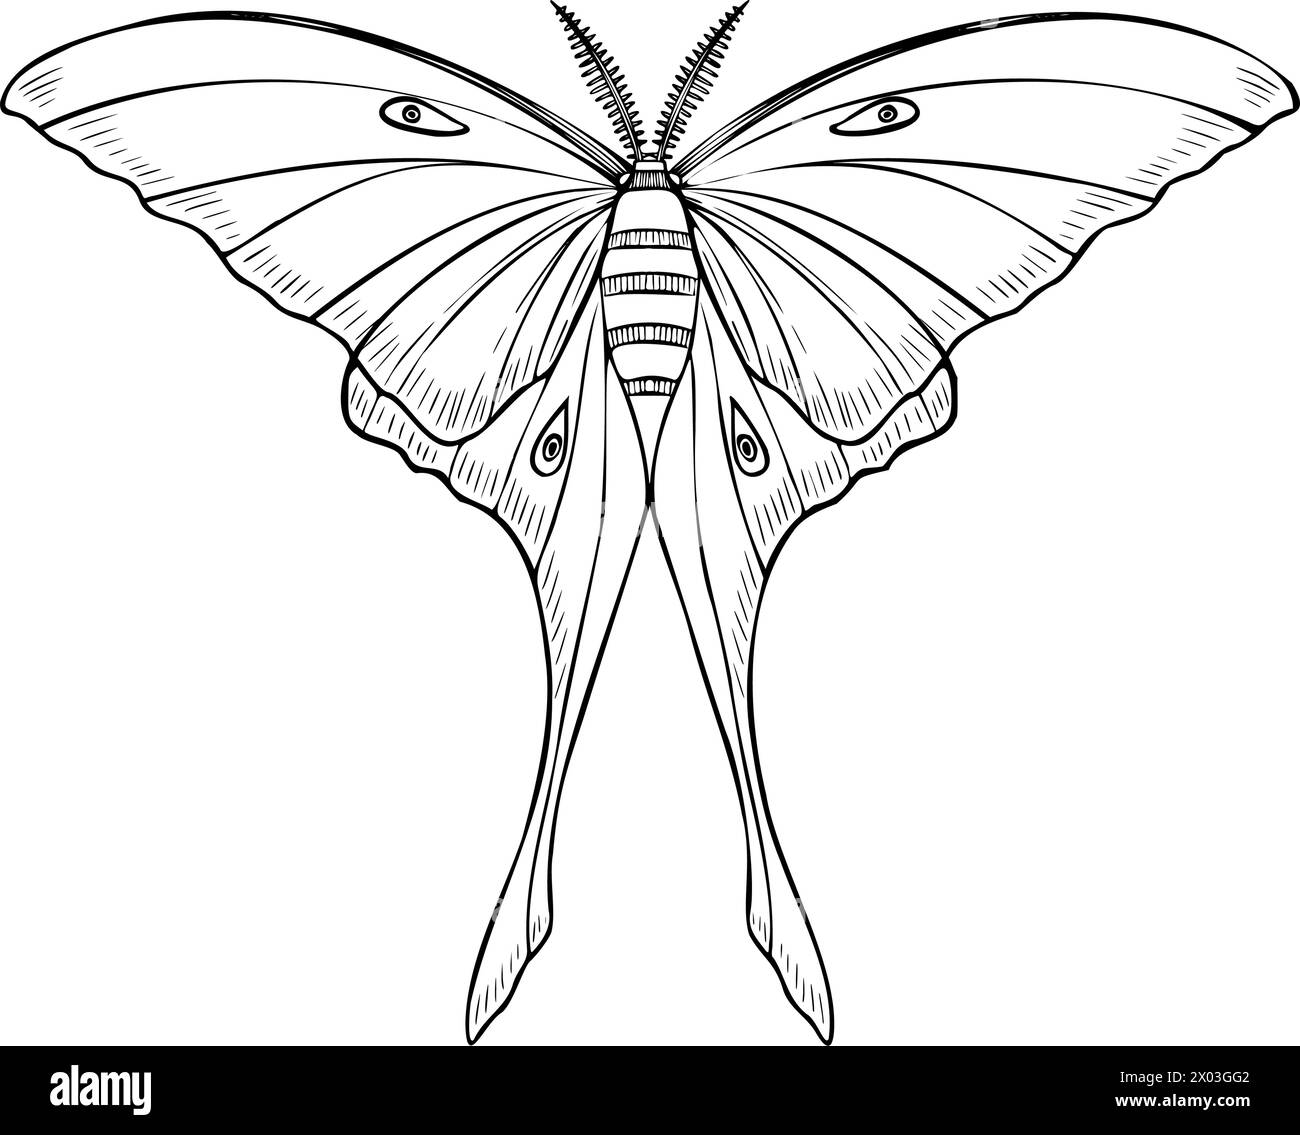 Illustration vectorielle blanche Luna Moth. Dessin de lune de nuit papillon peint par des encres noires dans un style linéaire. Gravure des ailes d'un insecte volant. Gravure de contour de l'impression aquarelle magique ésotérique. Illustration de Vecteur